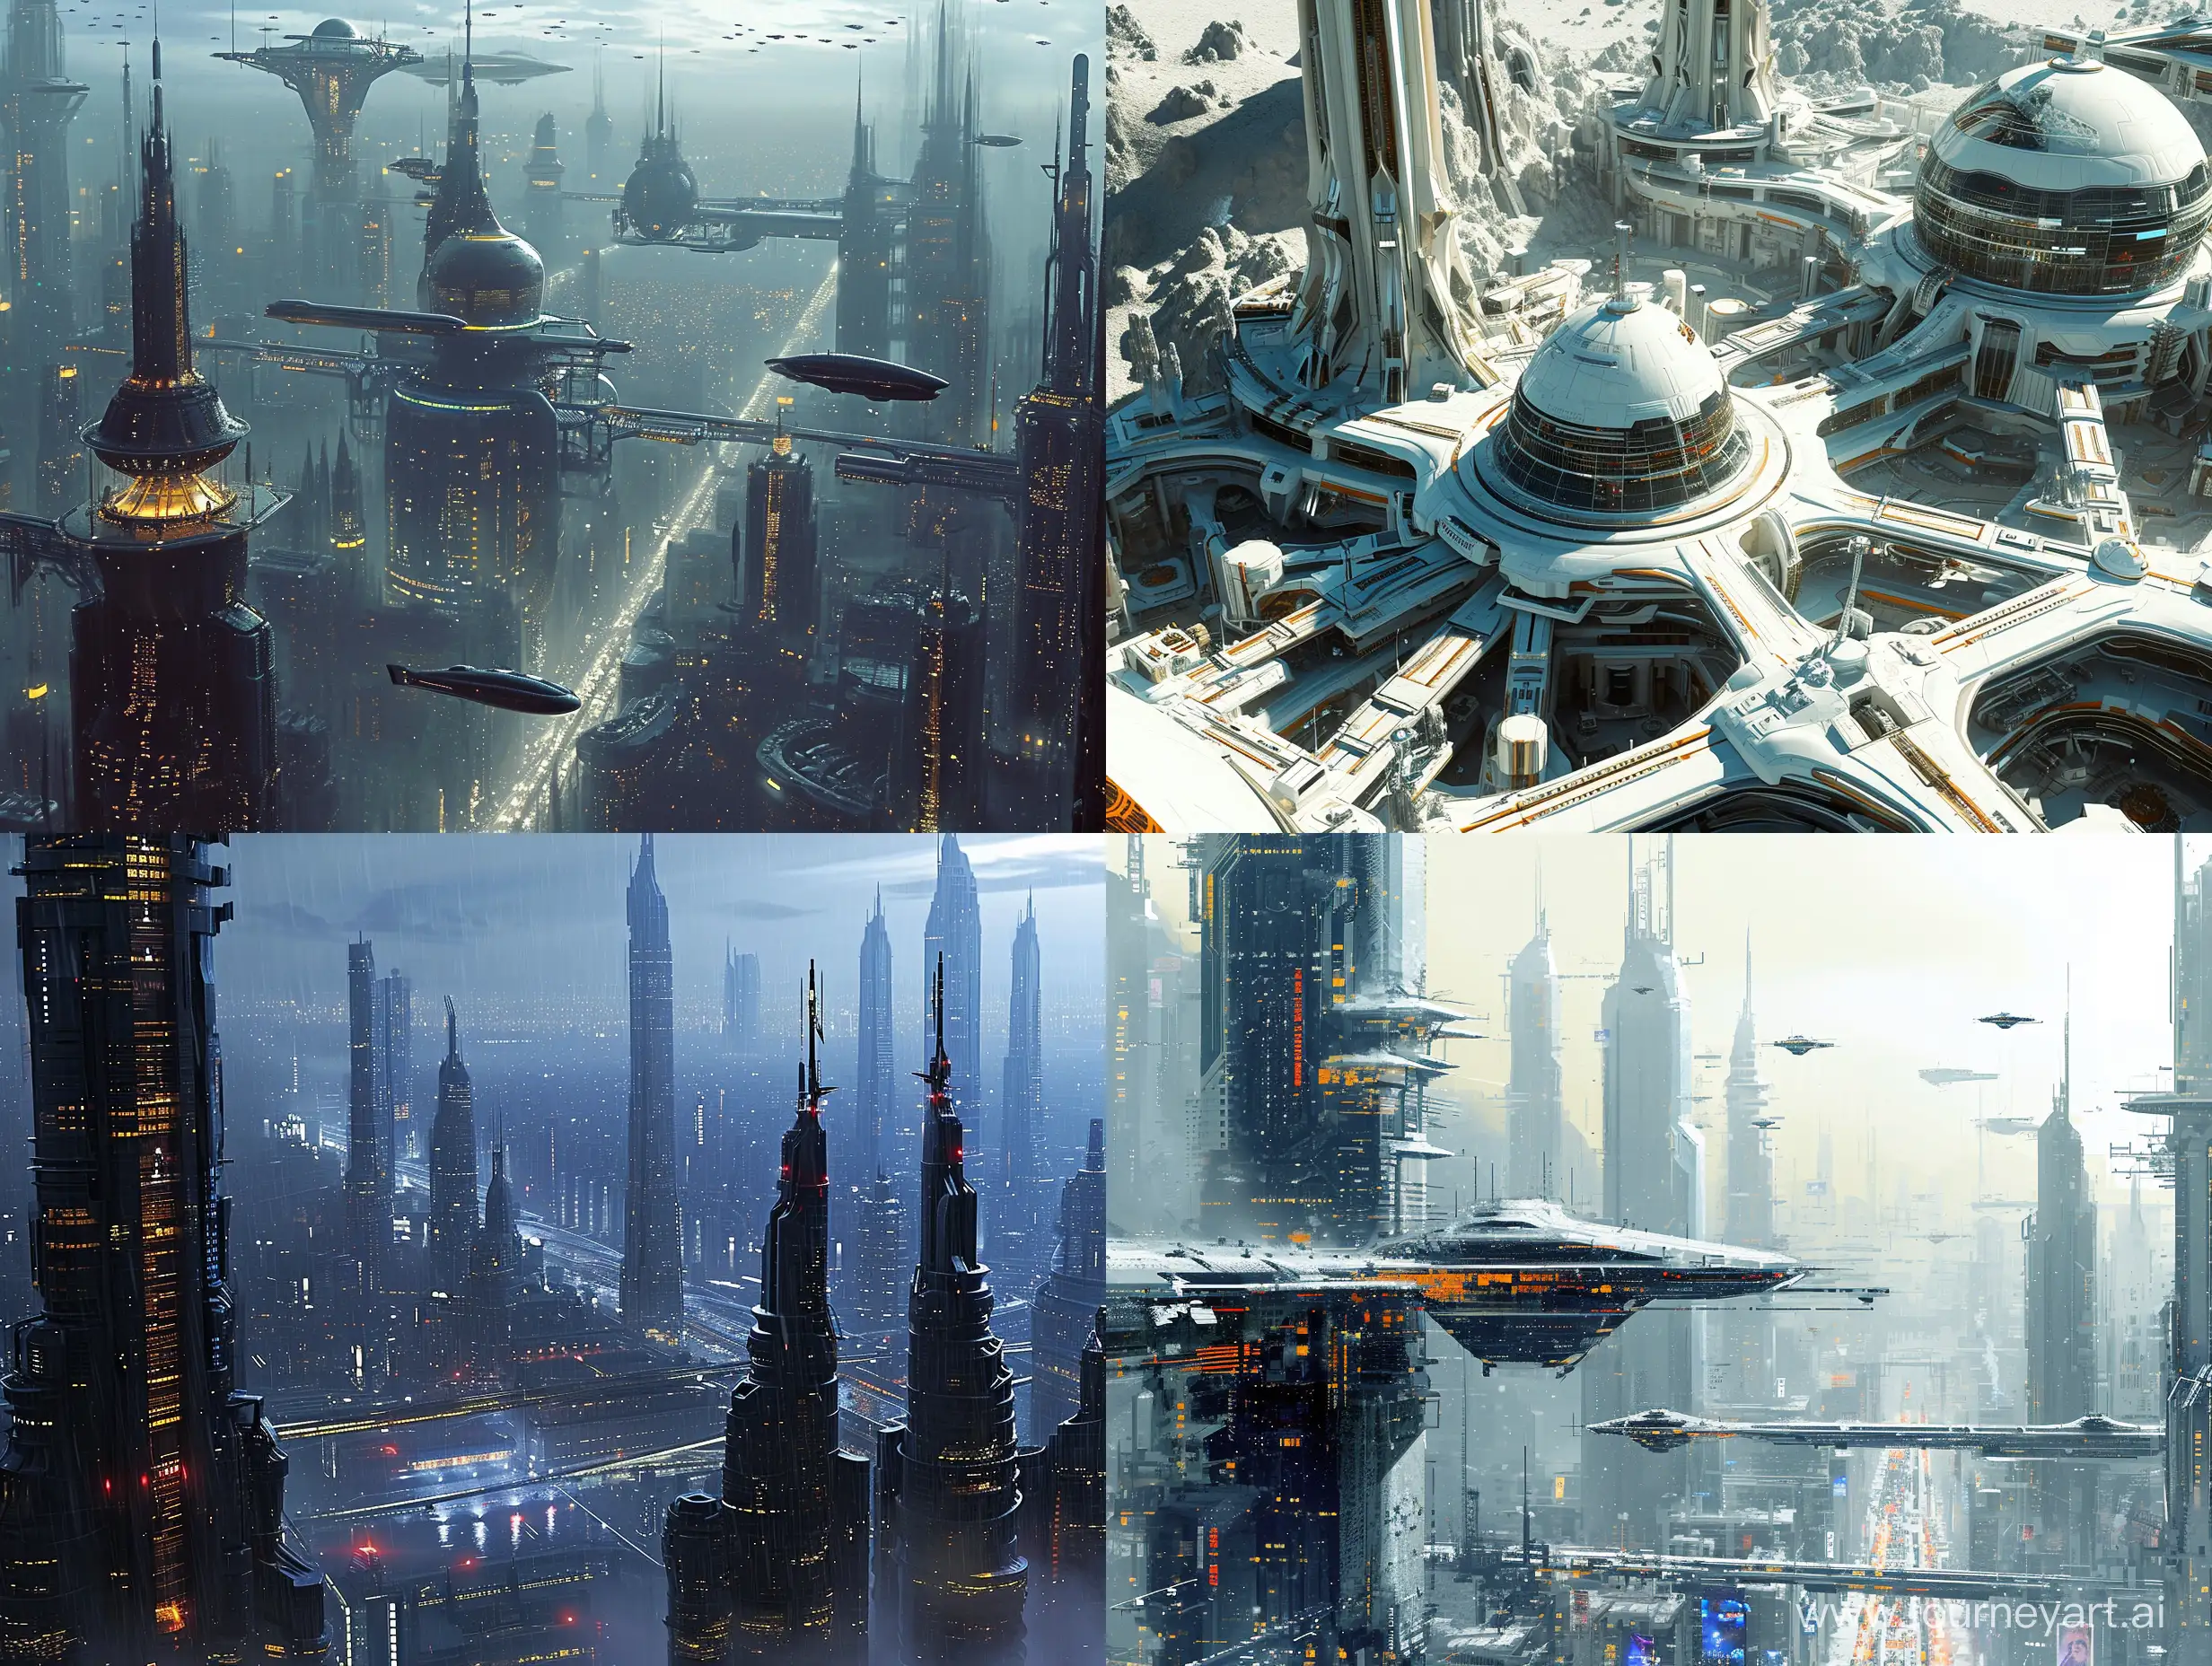 Futuristic-Cityscape-with-Maximum-Details